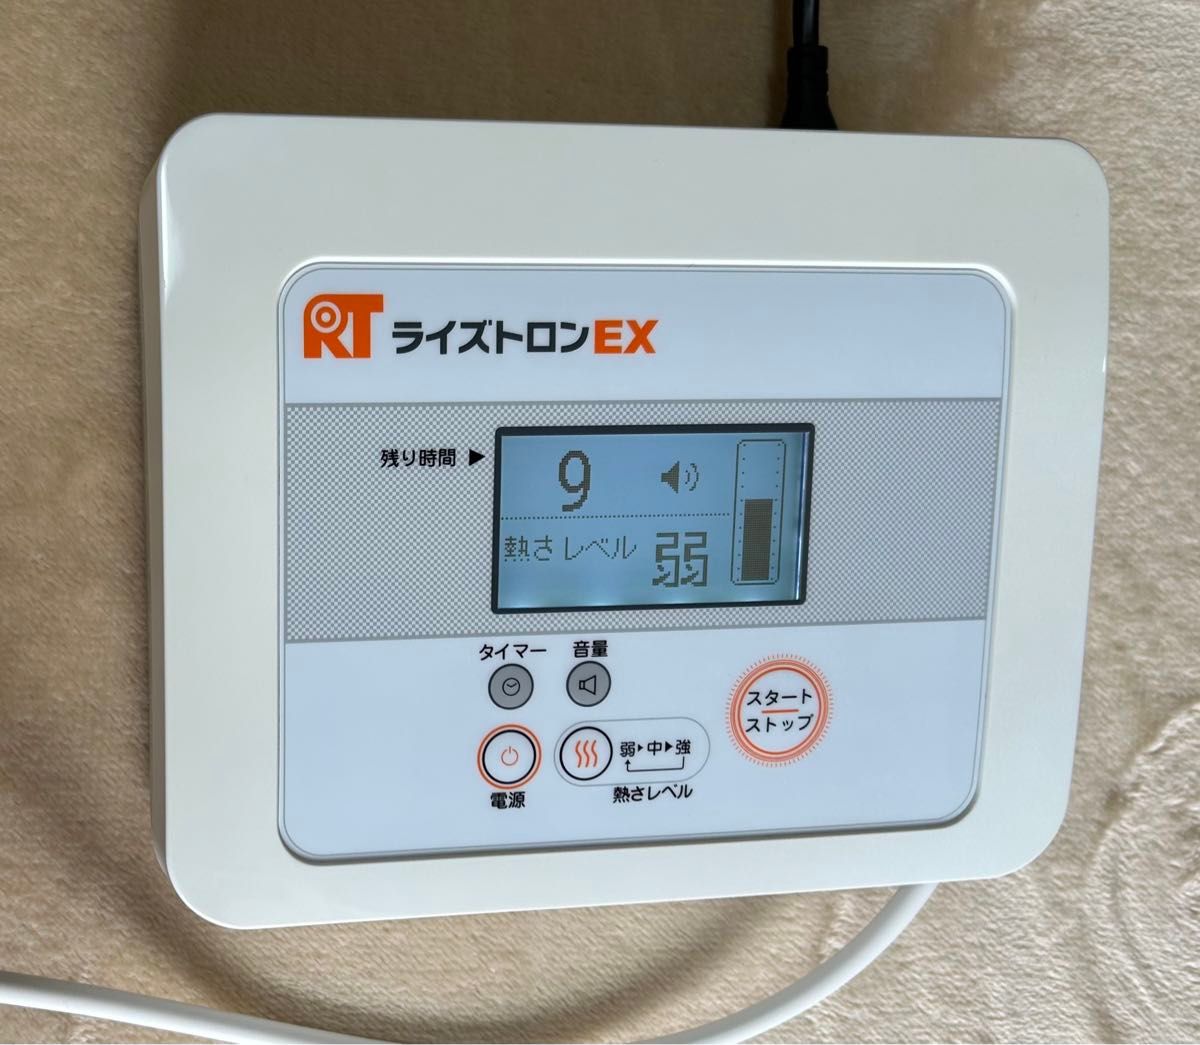 使用小！テクノリンク ライズトロンEX 家庭用 超短波治療器 健康器具 温熱ケア 肩こり 腰痛 温熱治療 ライズトロンex